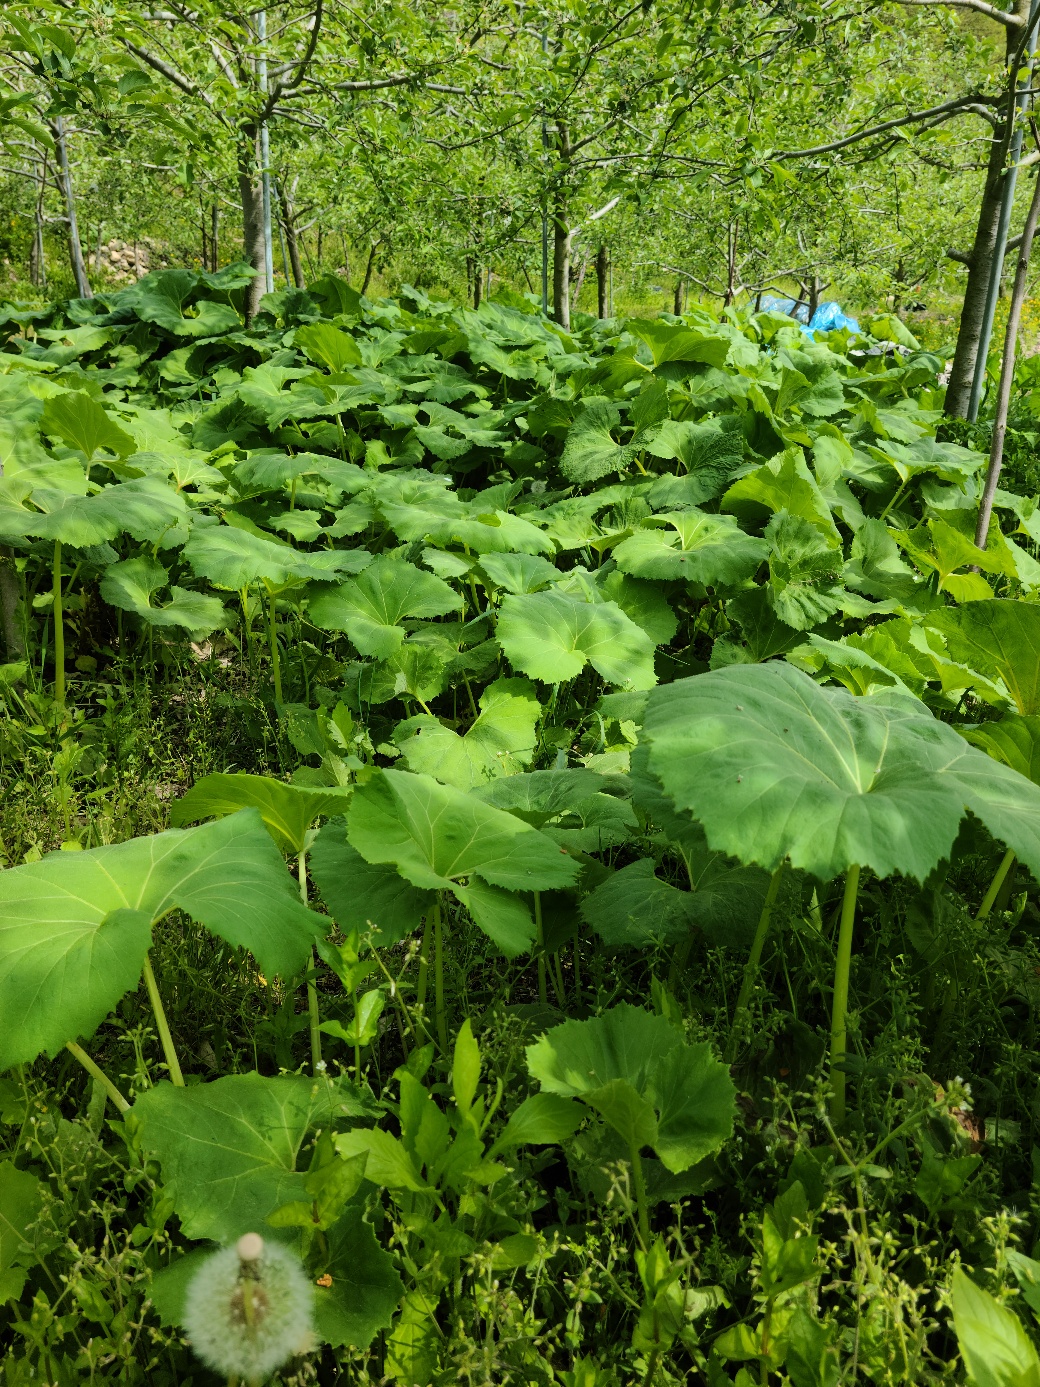 [문경초록마을] 청정자연오미자마을의 봄나물 밭두렁 머위대 2kg